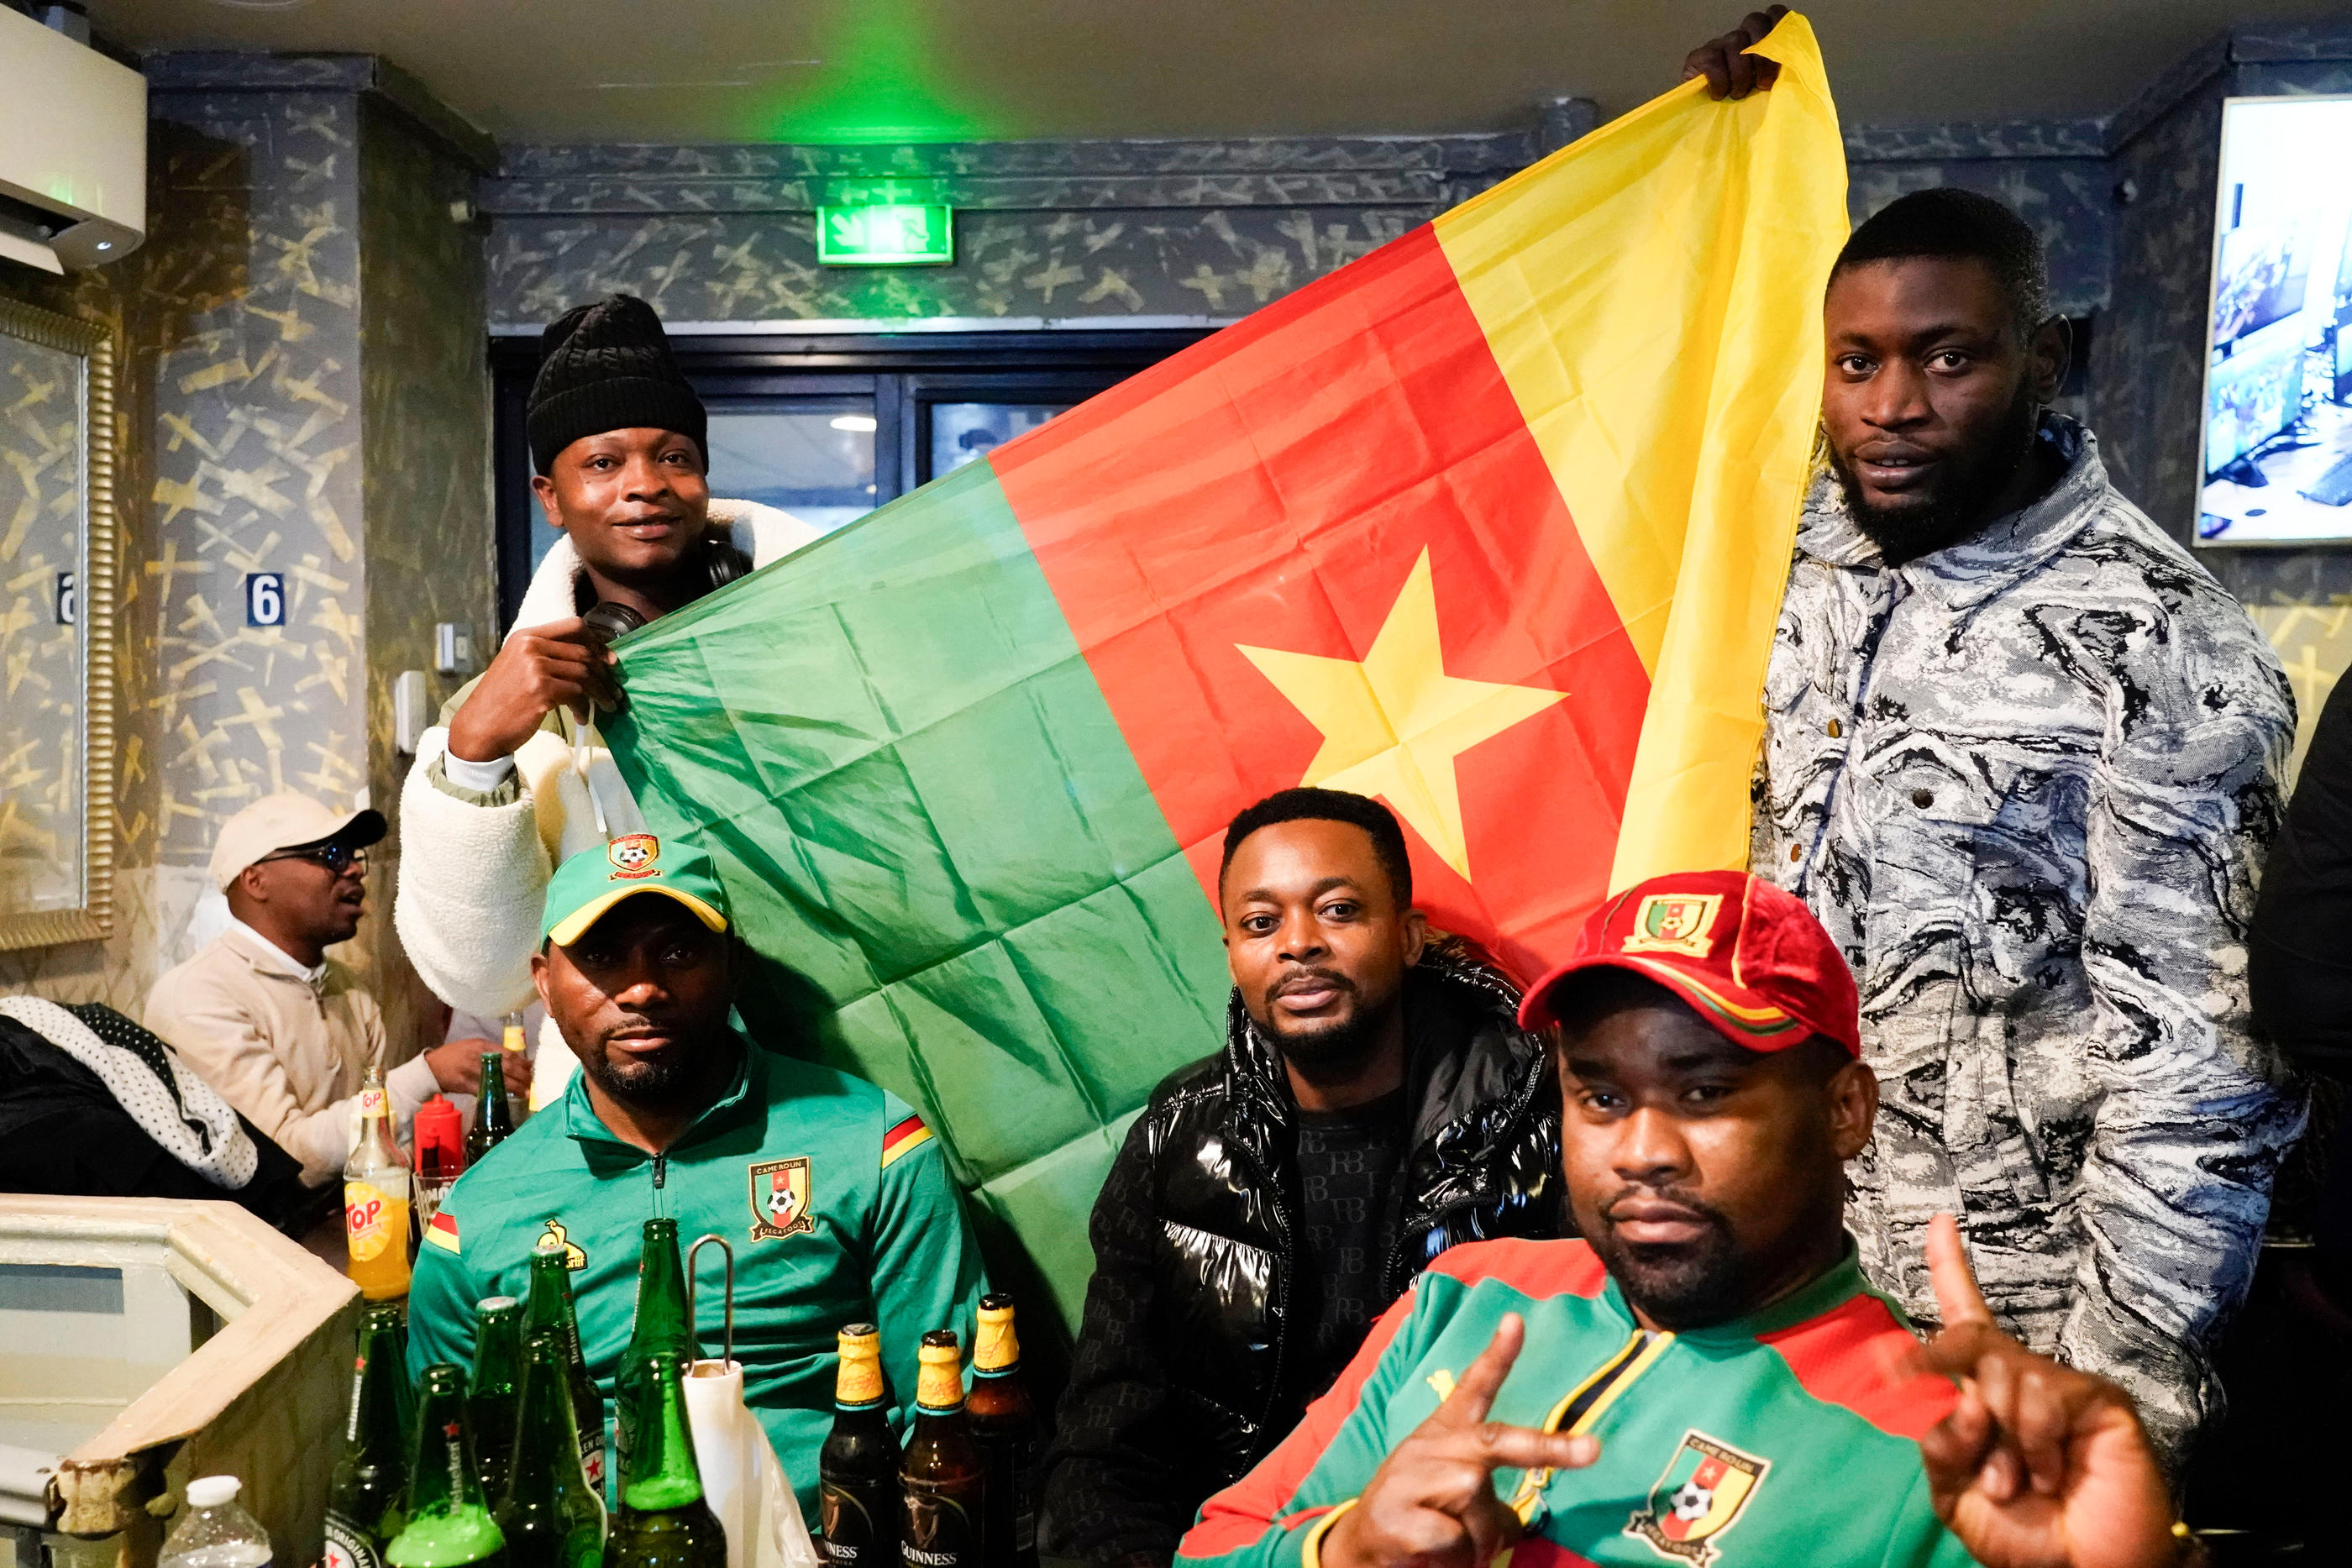 Lundi soir, les fans des « Lions indomptables » lors du match Cameroun-Guinée (1-1) réunis au Bolon, un restaurant camerounais du XVIIIe arrondissement de Paris. LP/Hervé Bellenger